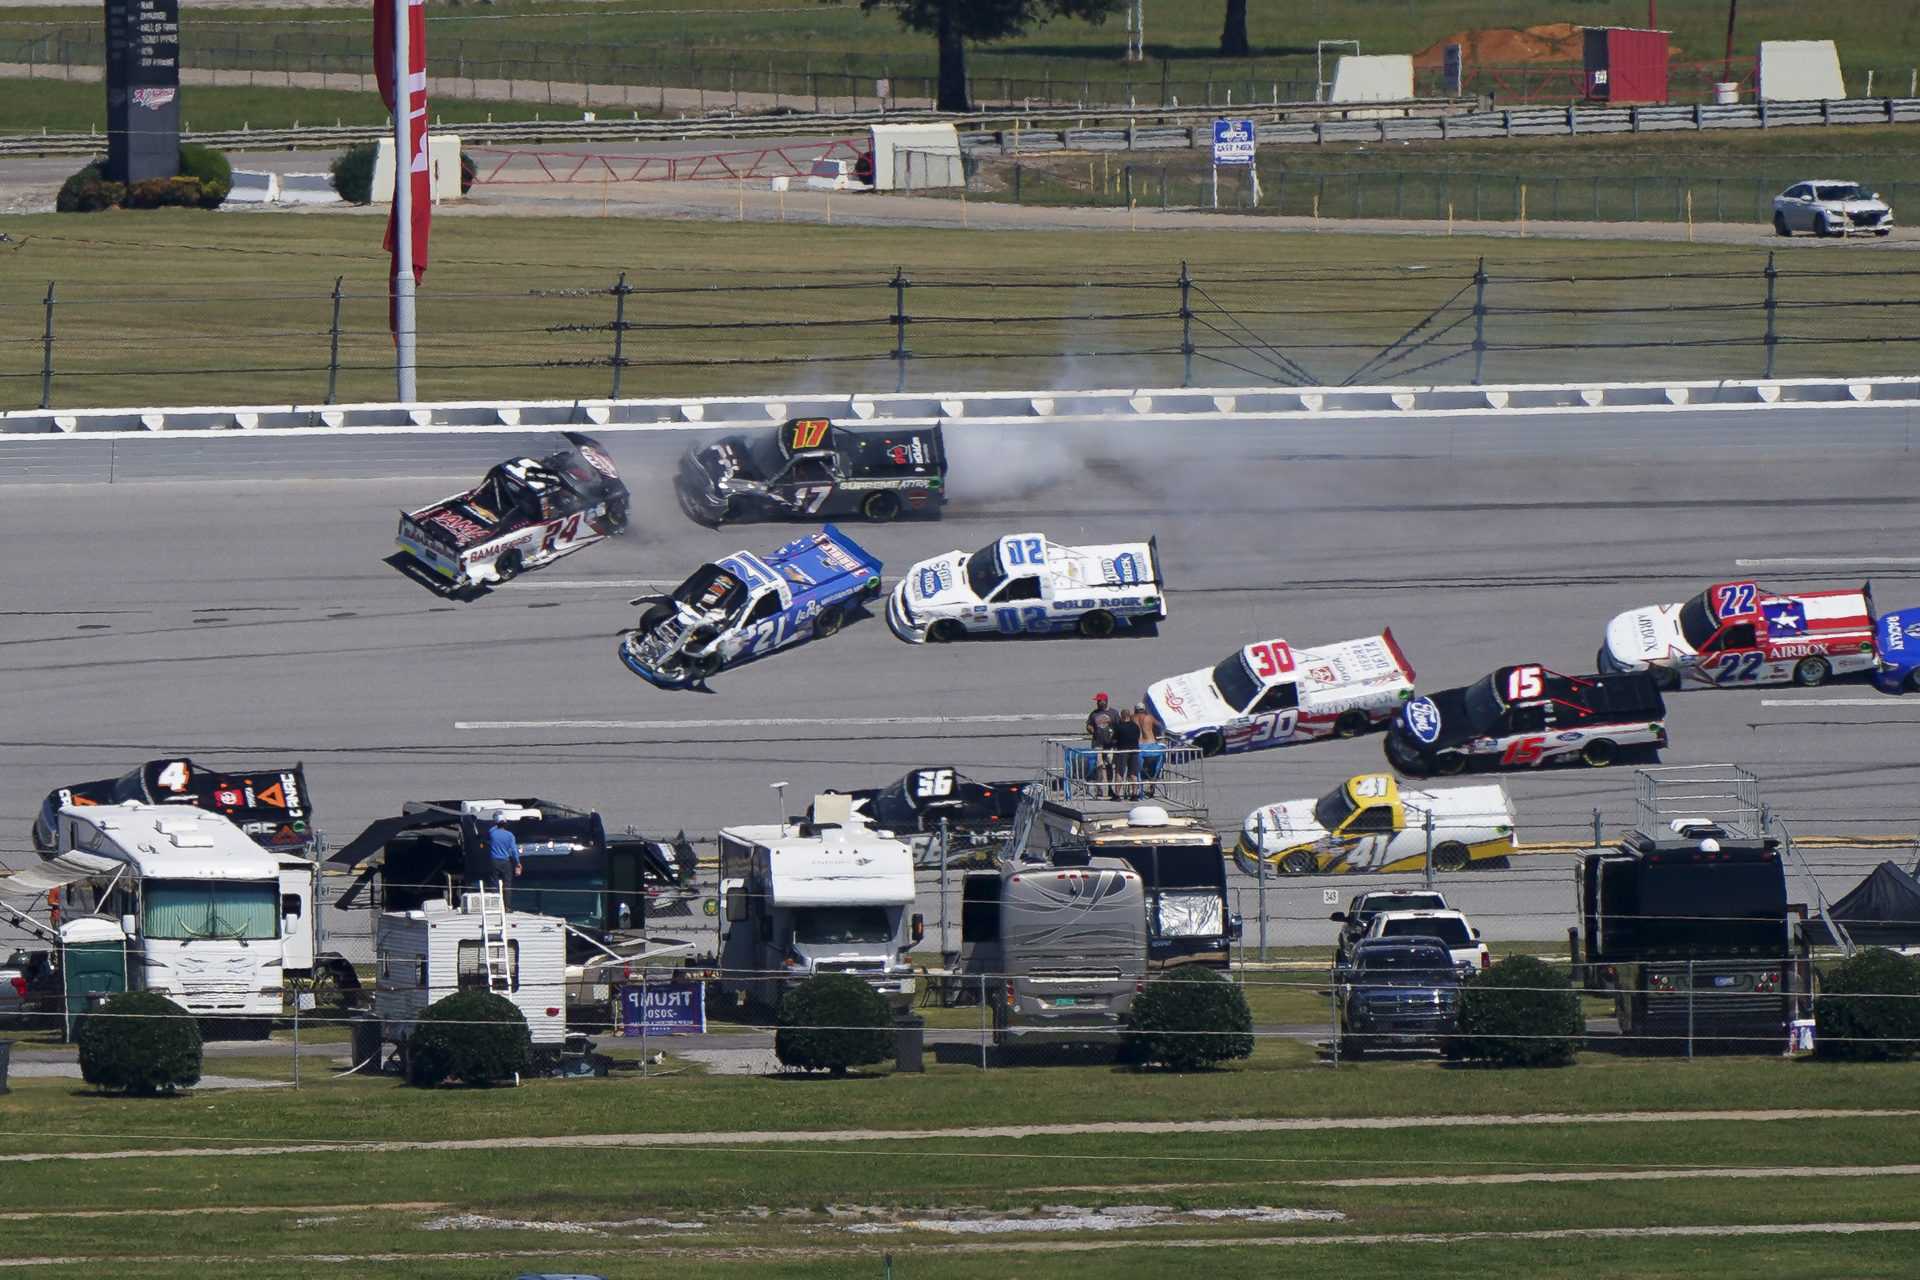 REGARDER: La voiture des candidats aux éliminatoires prend feu lors de la course NASCAR Truck Series au Kansas